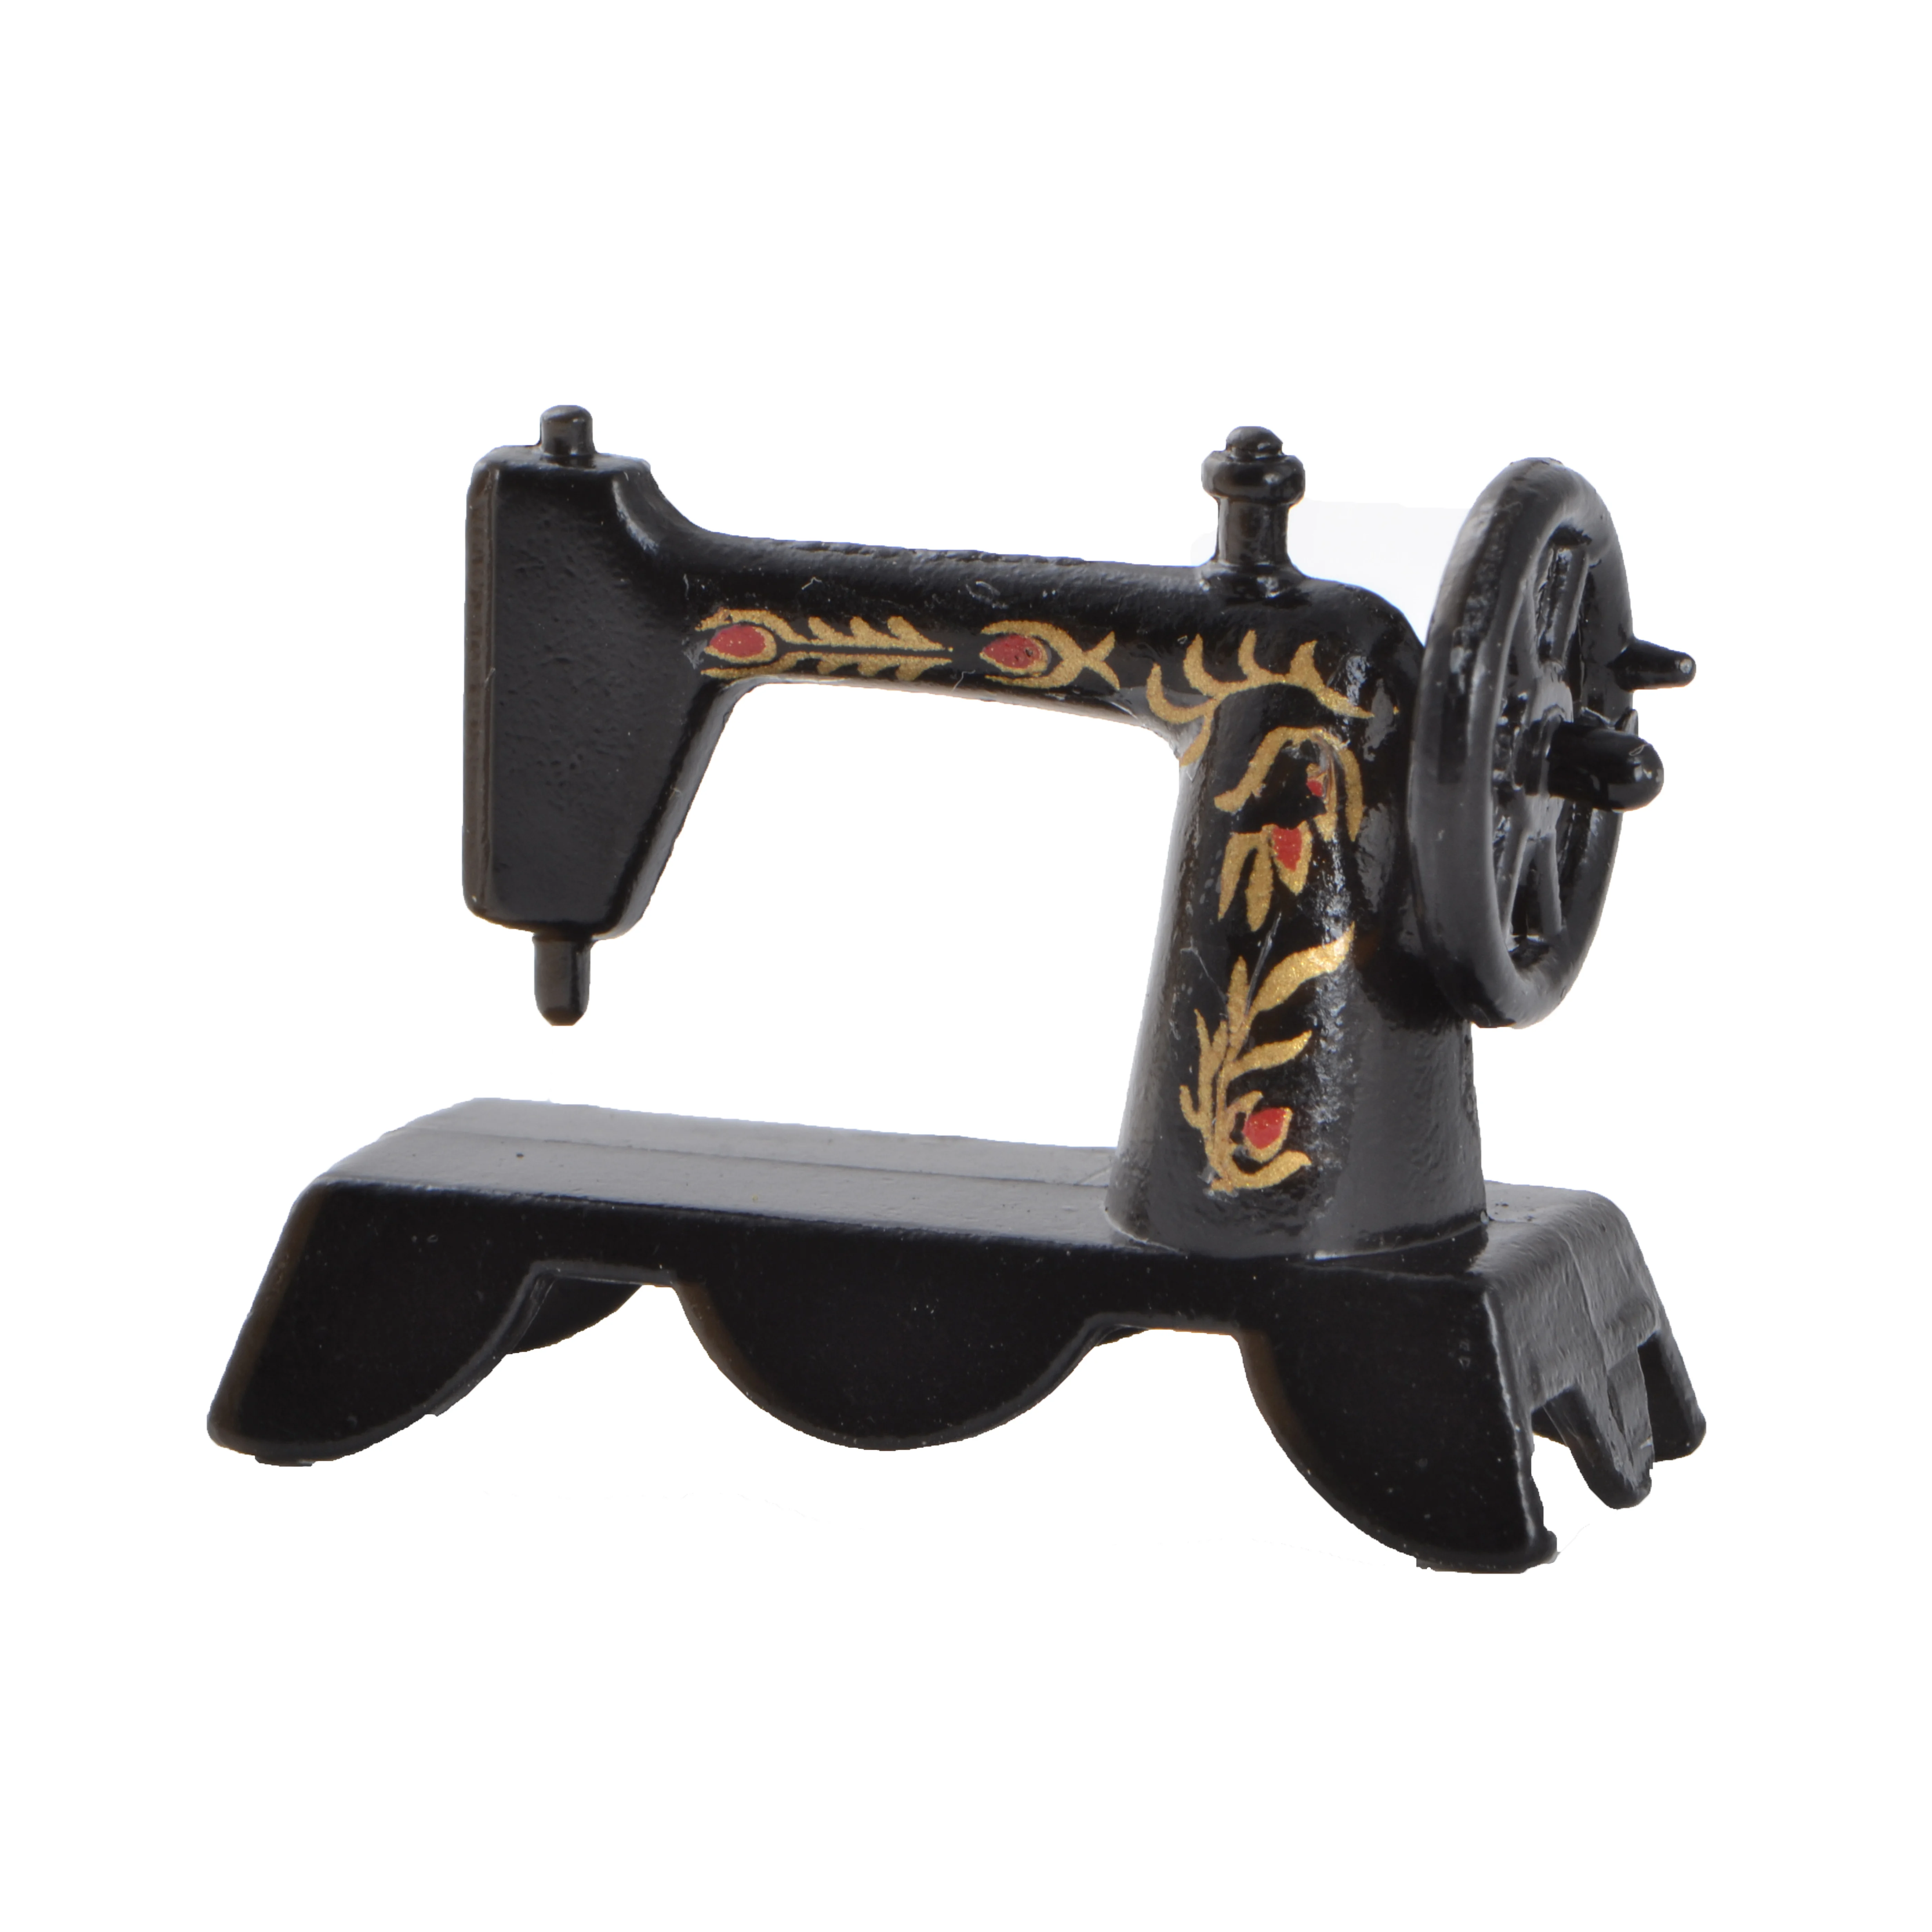 CREAL 72060 vieja máquina de coser metal 1:12 para casa de muñecas nuevo # 